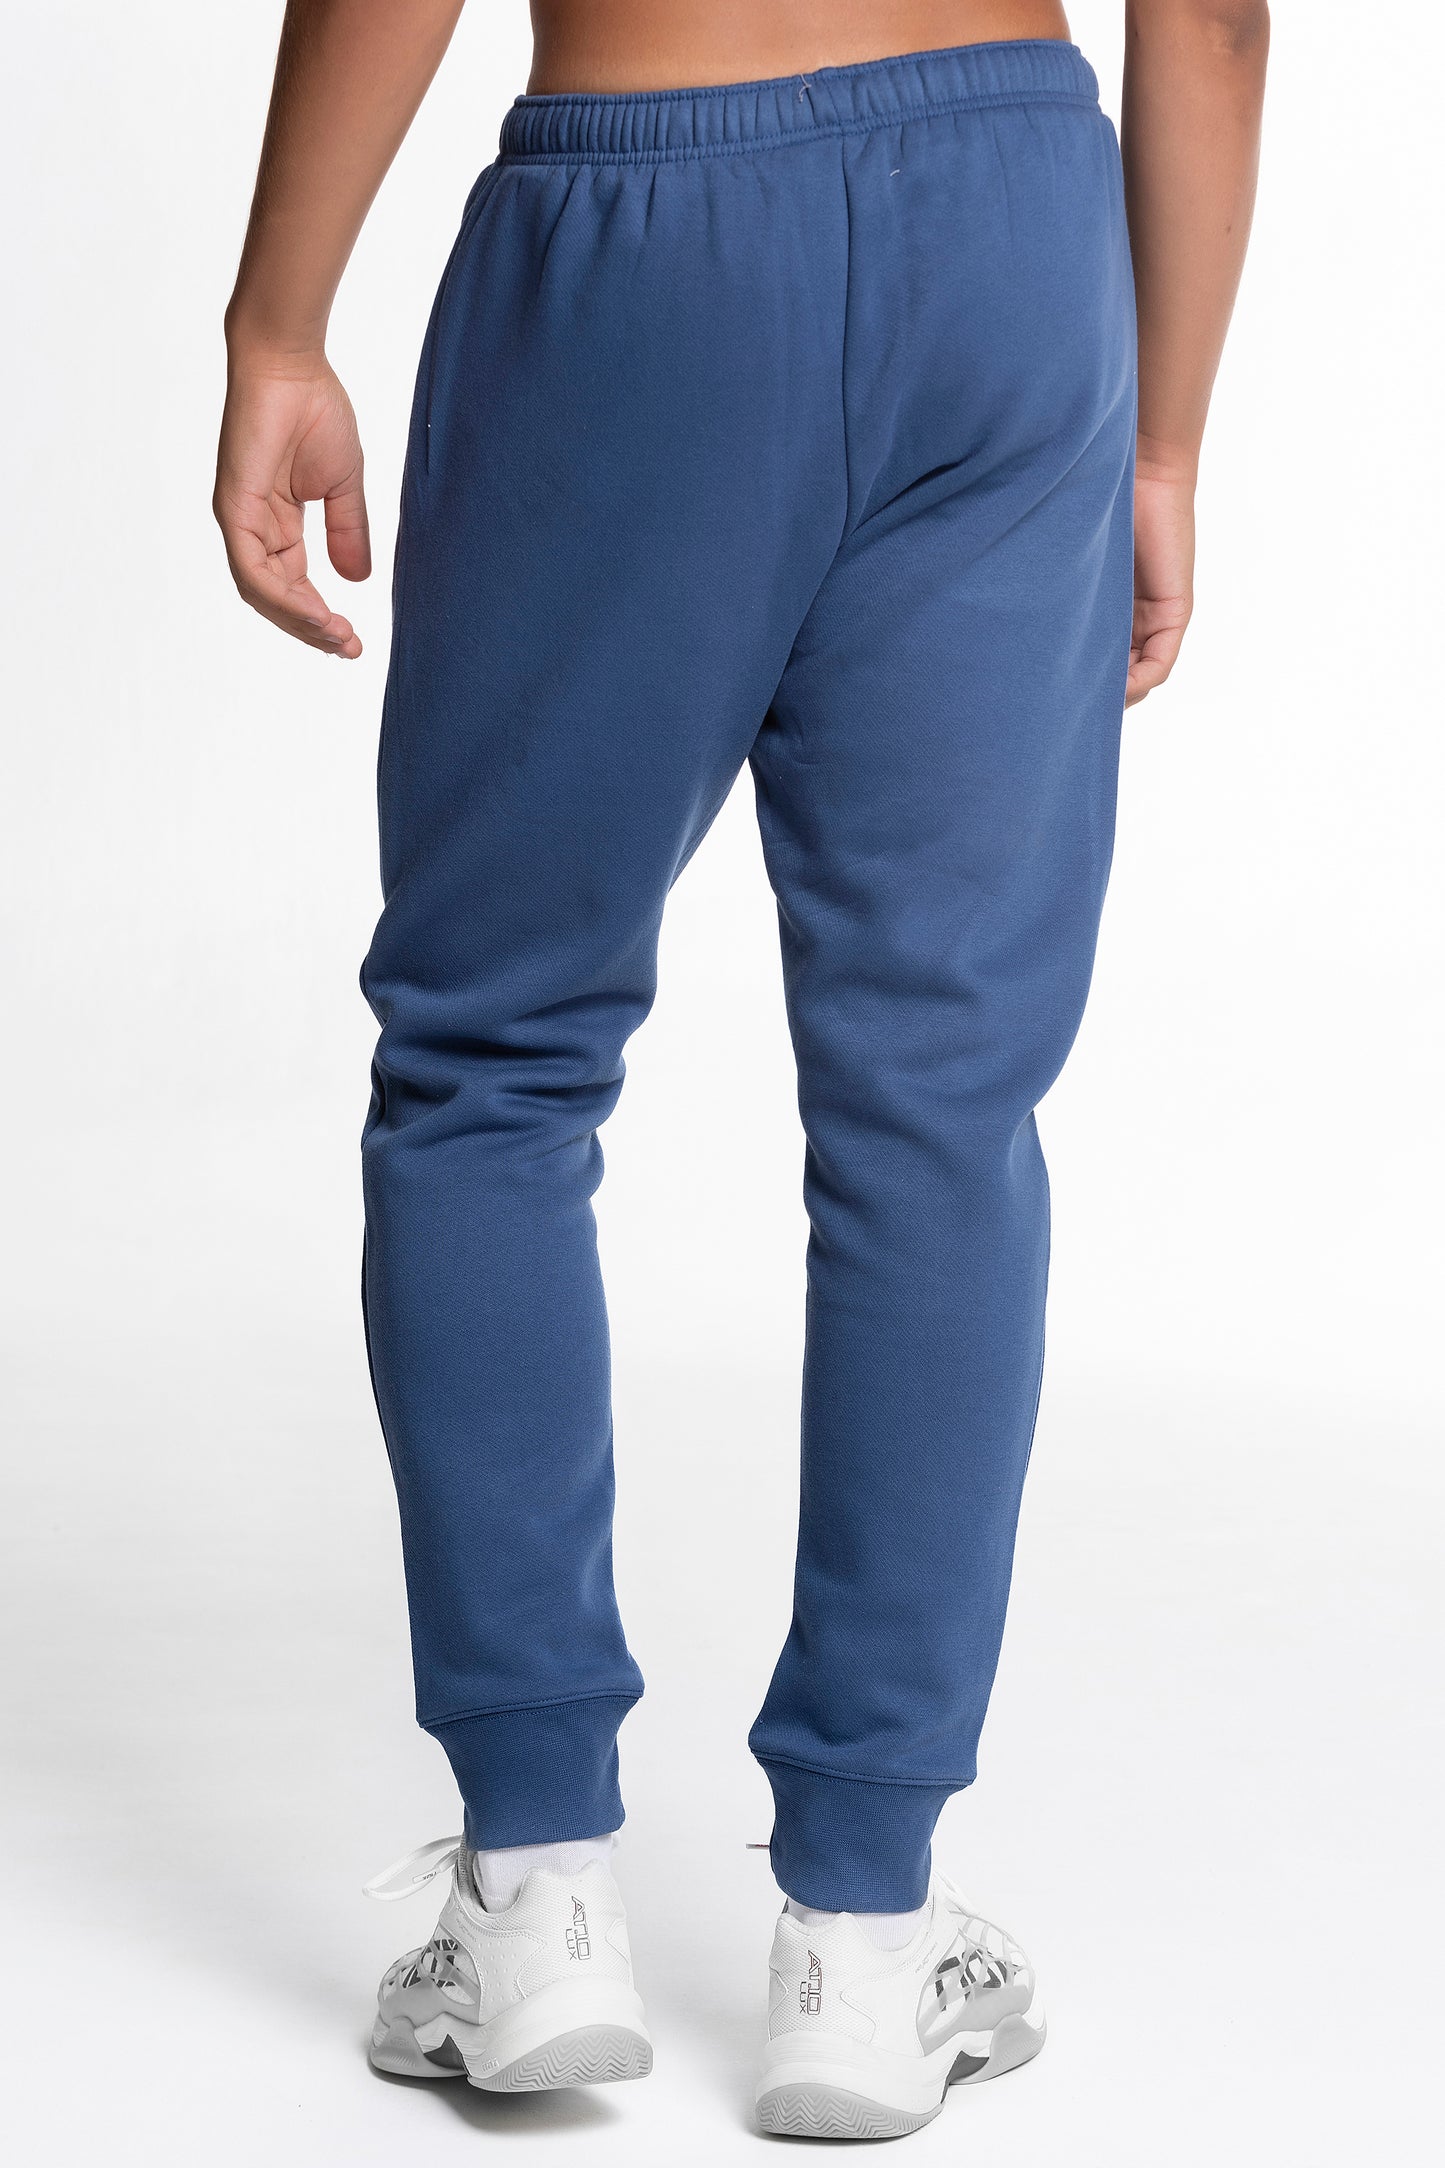 NOX Blue pants